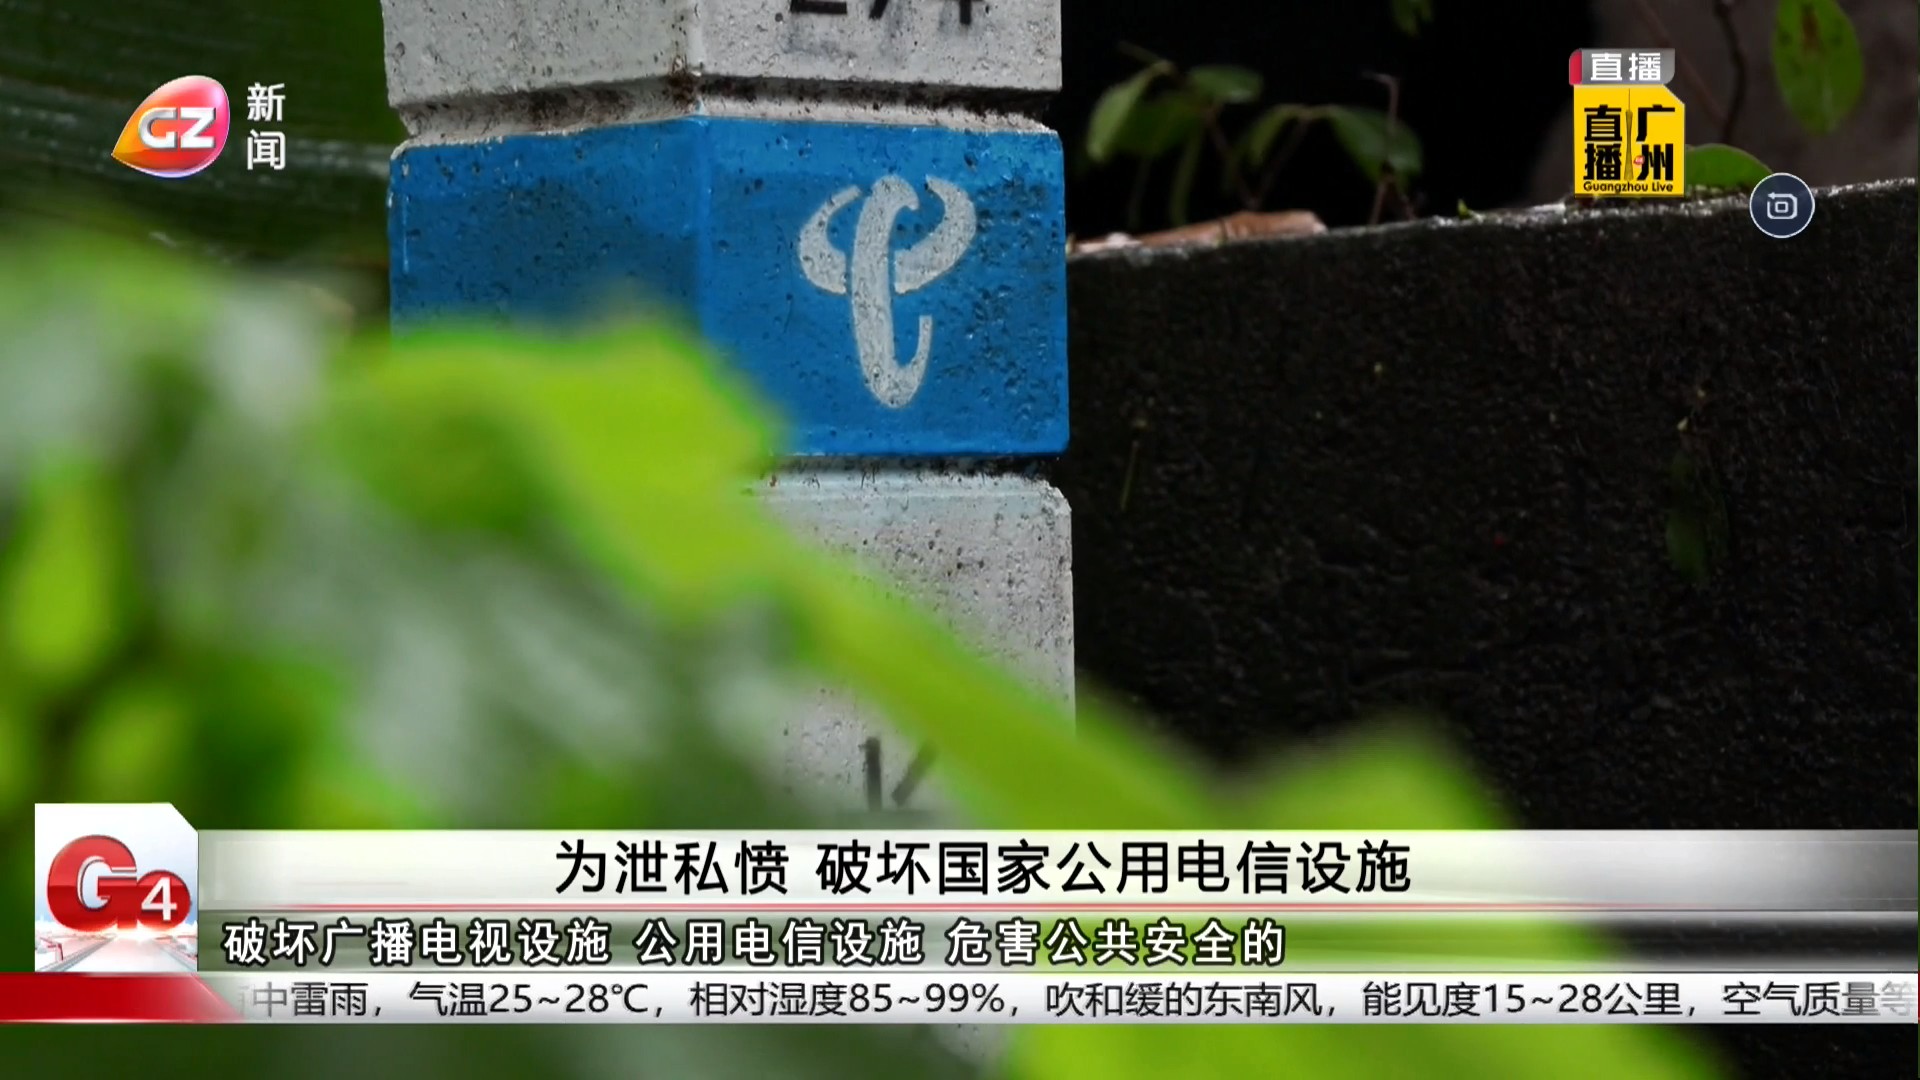 广州台新闻频道 G4出动 为泄私愤 破坏国家公用电信设施